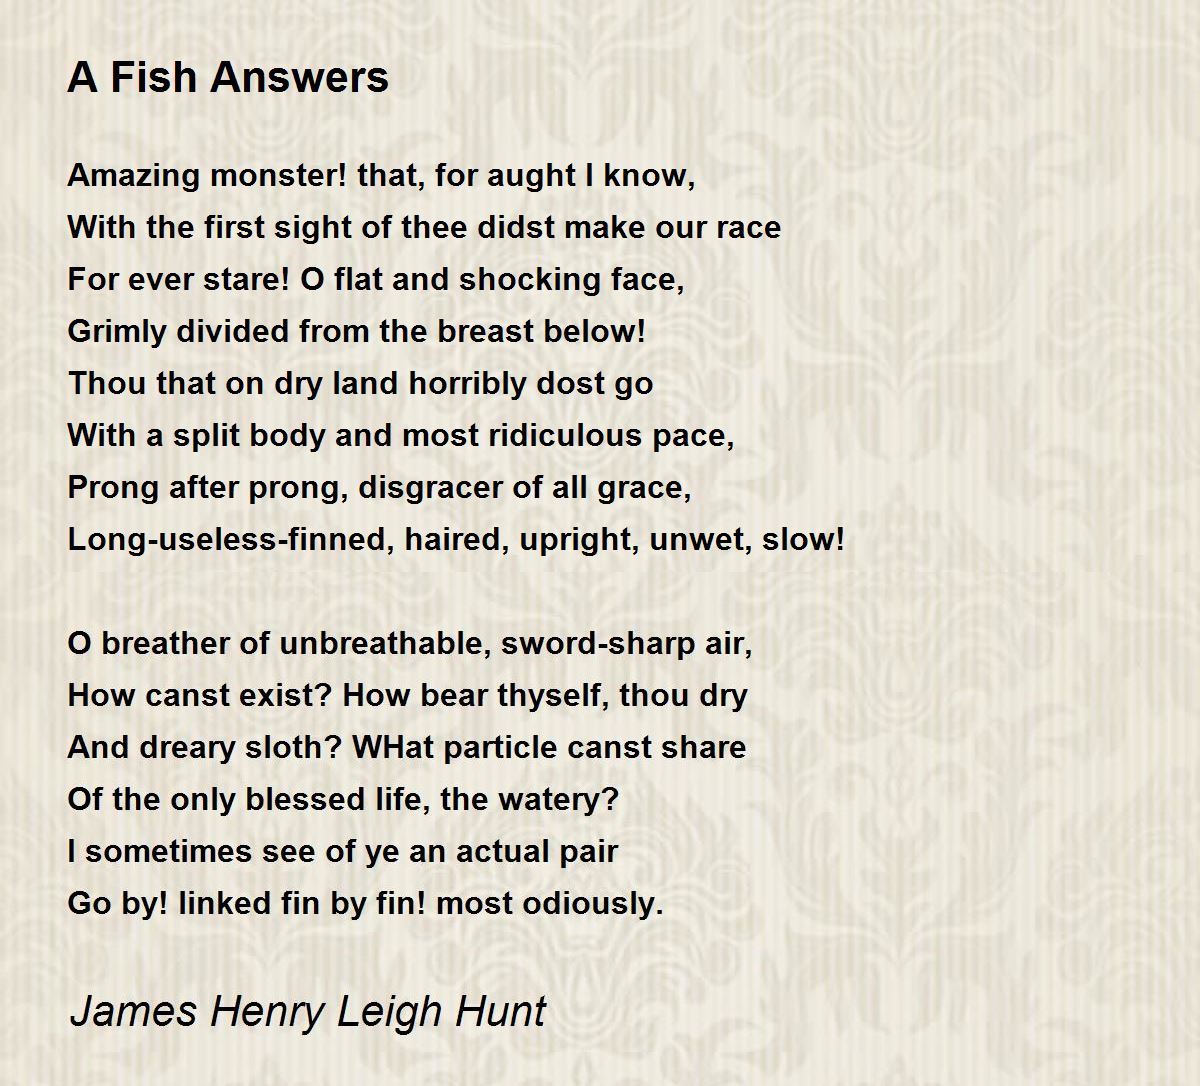 the fish poem